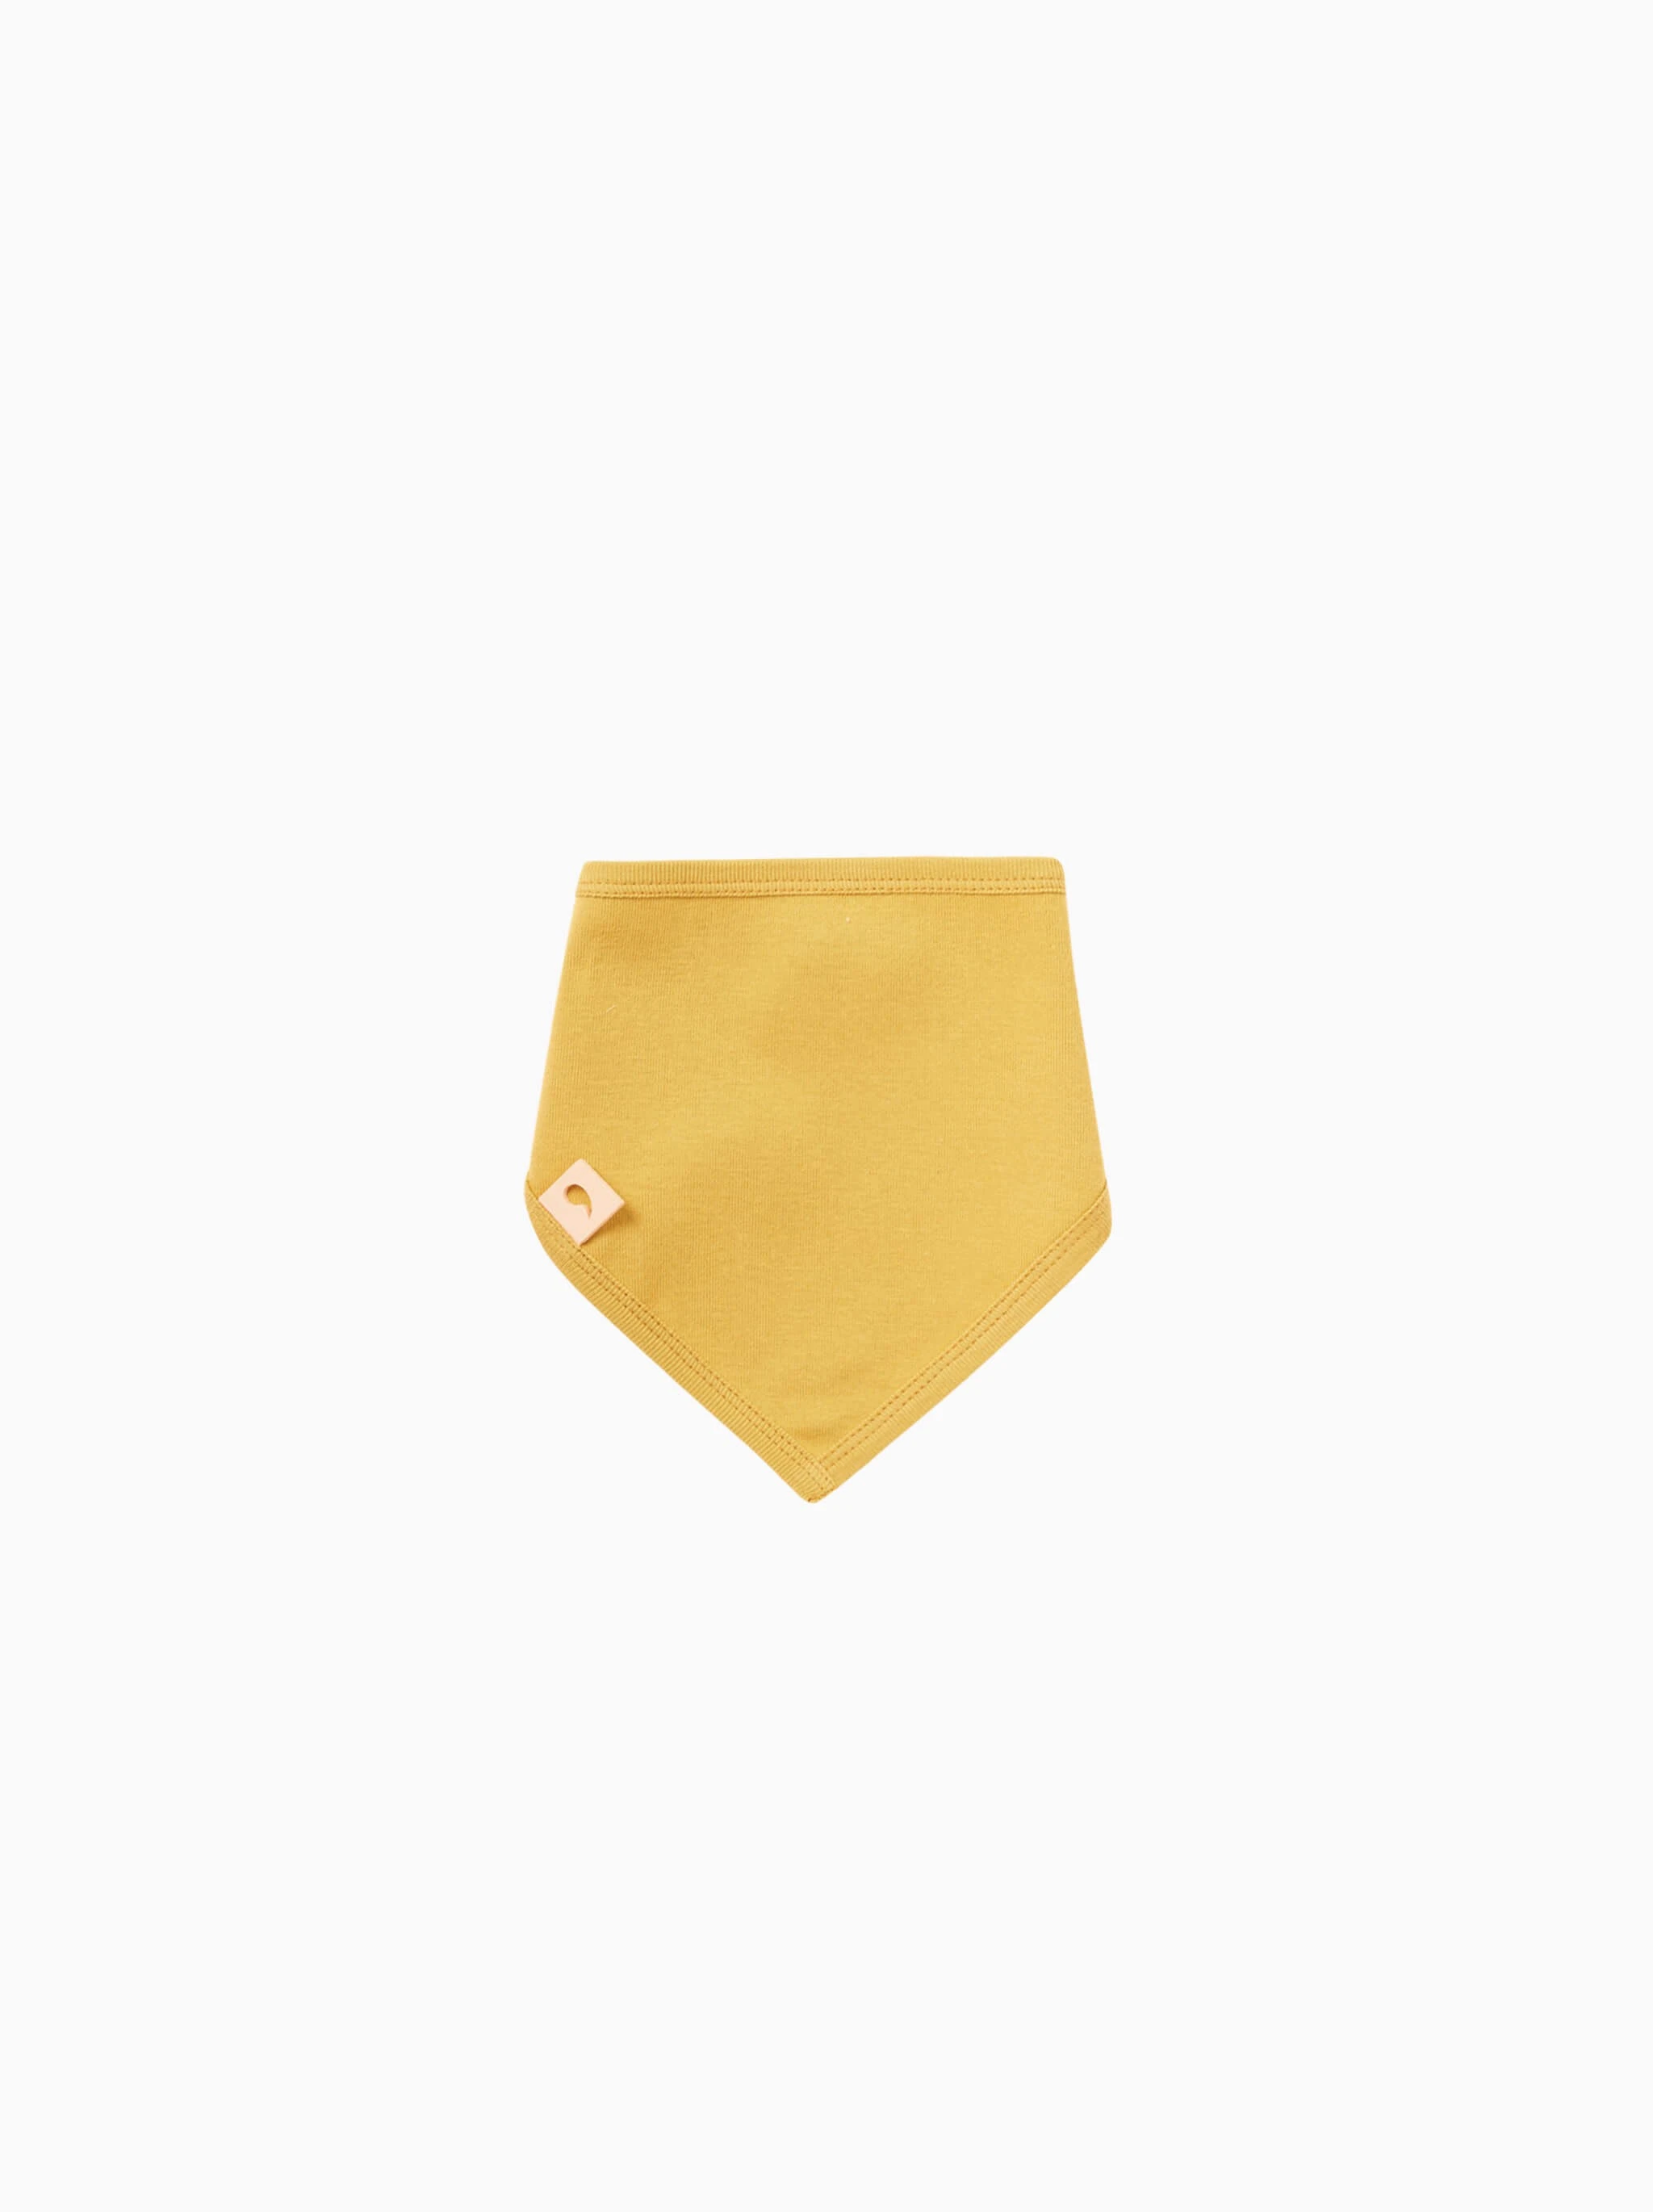 baby bandana bib · mustard